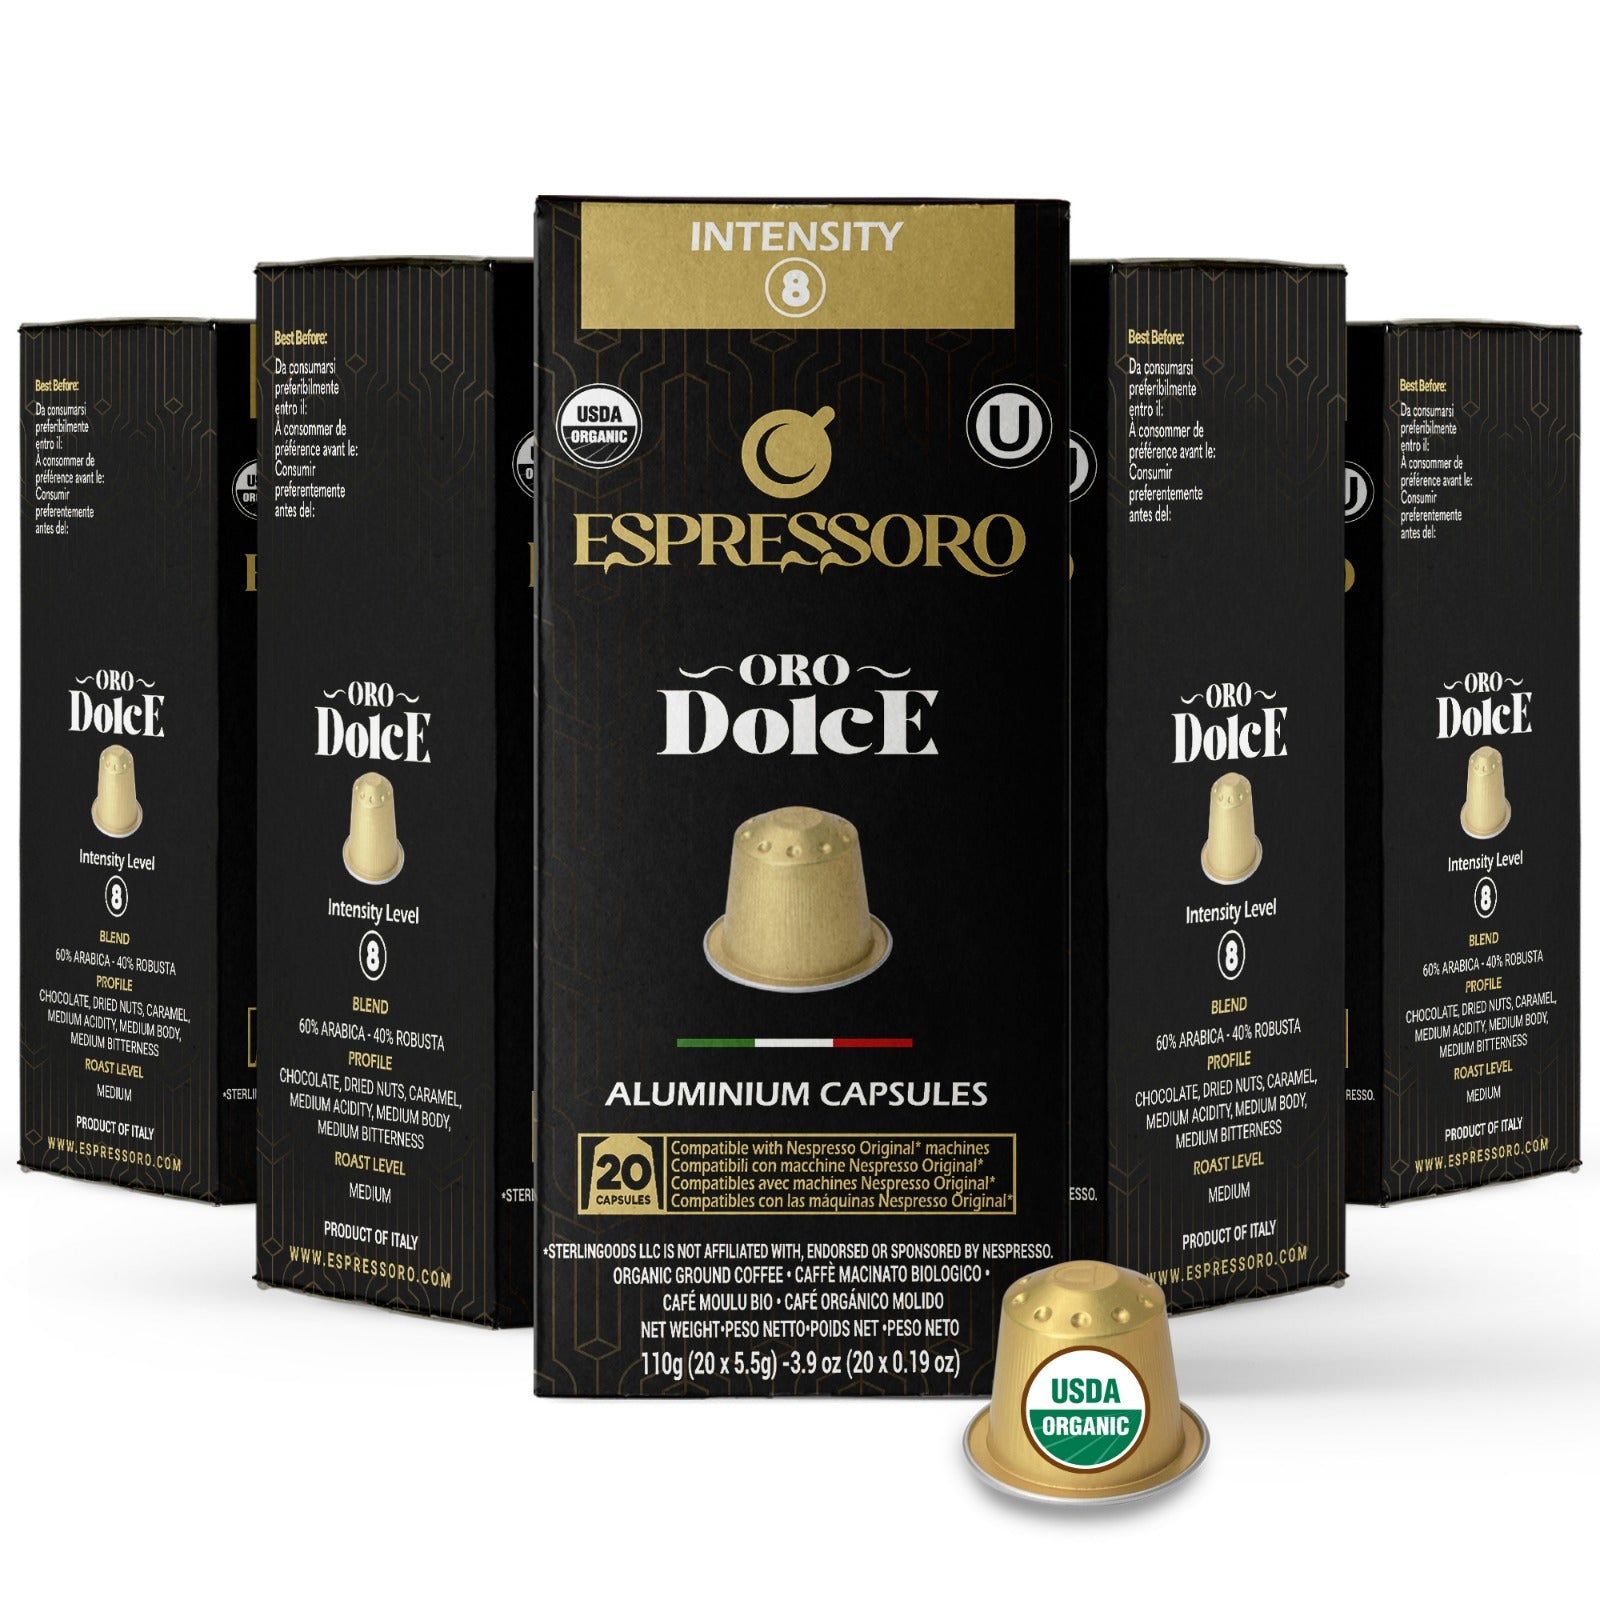 Espresso pods